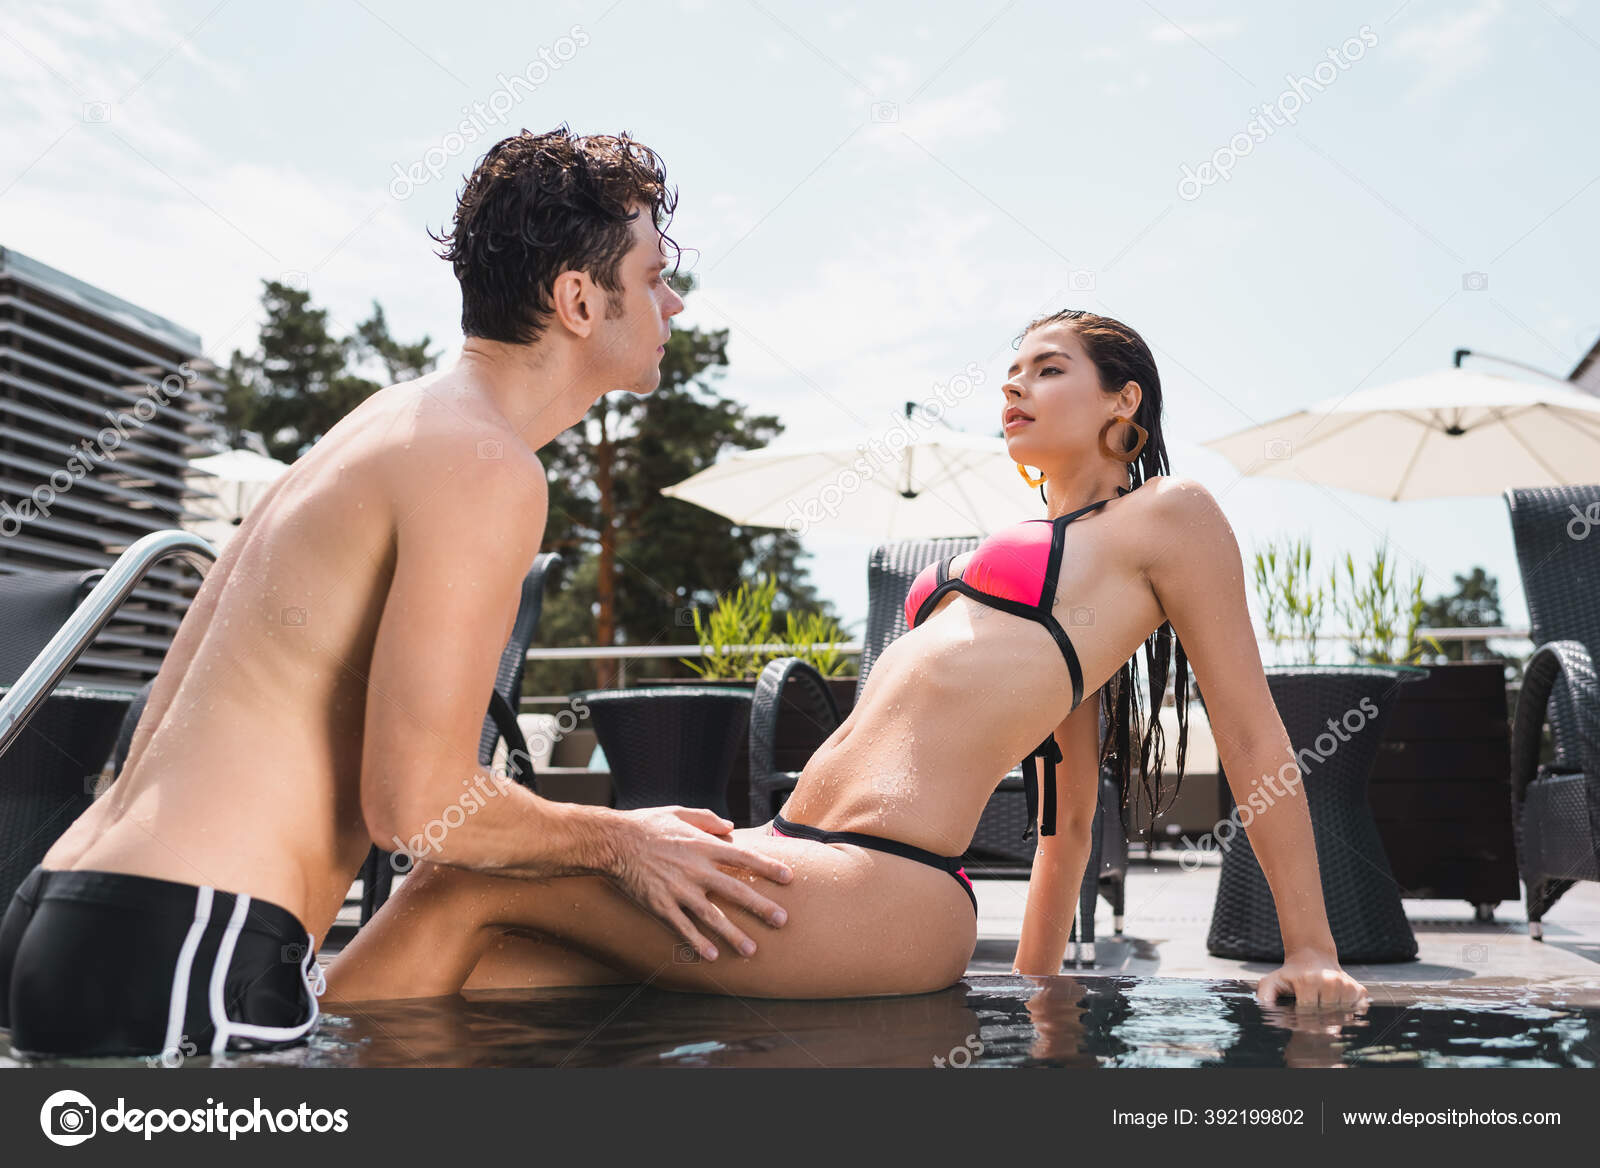 Shirtless Man Touching Wet Woman Swimwear Sitting Pool Stock Photo